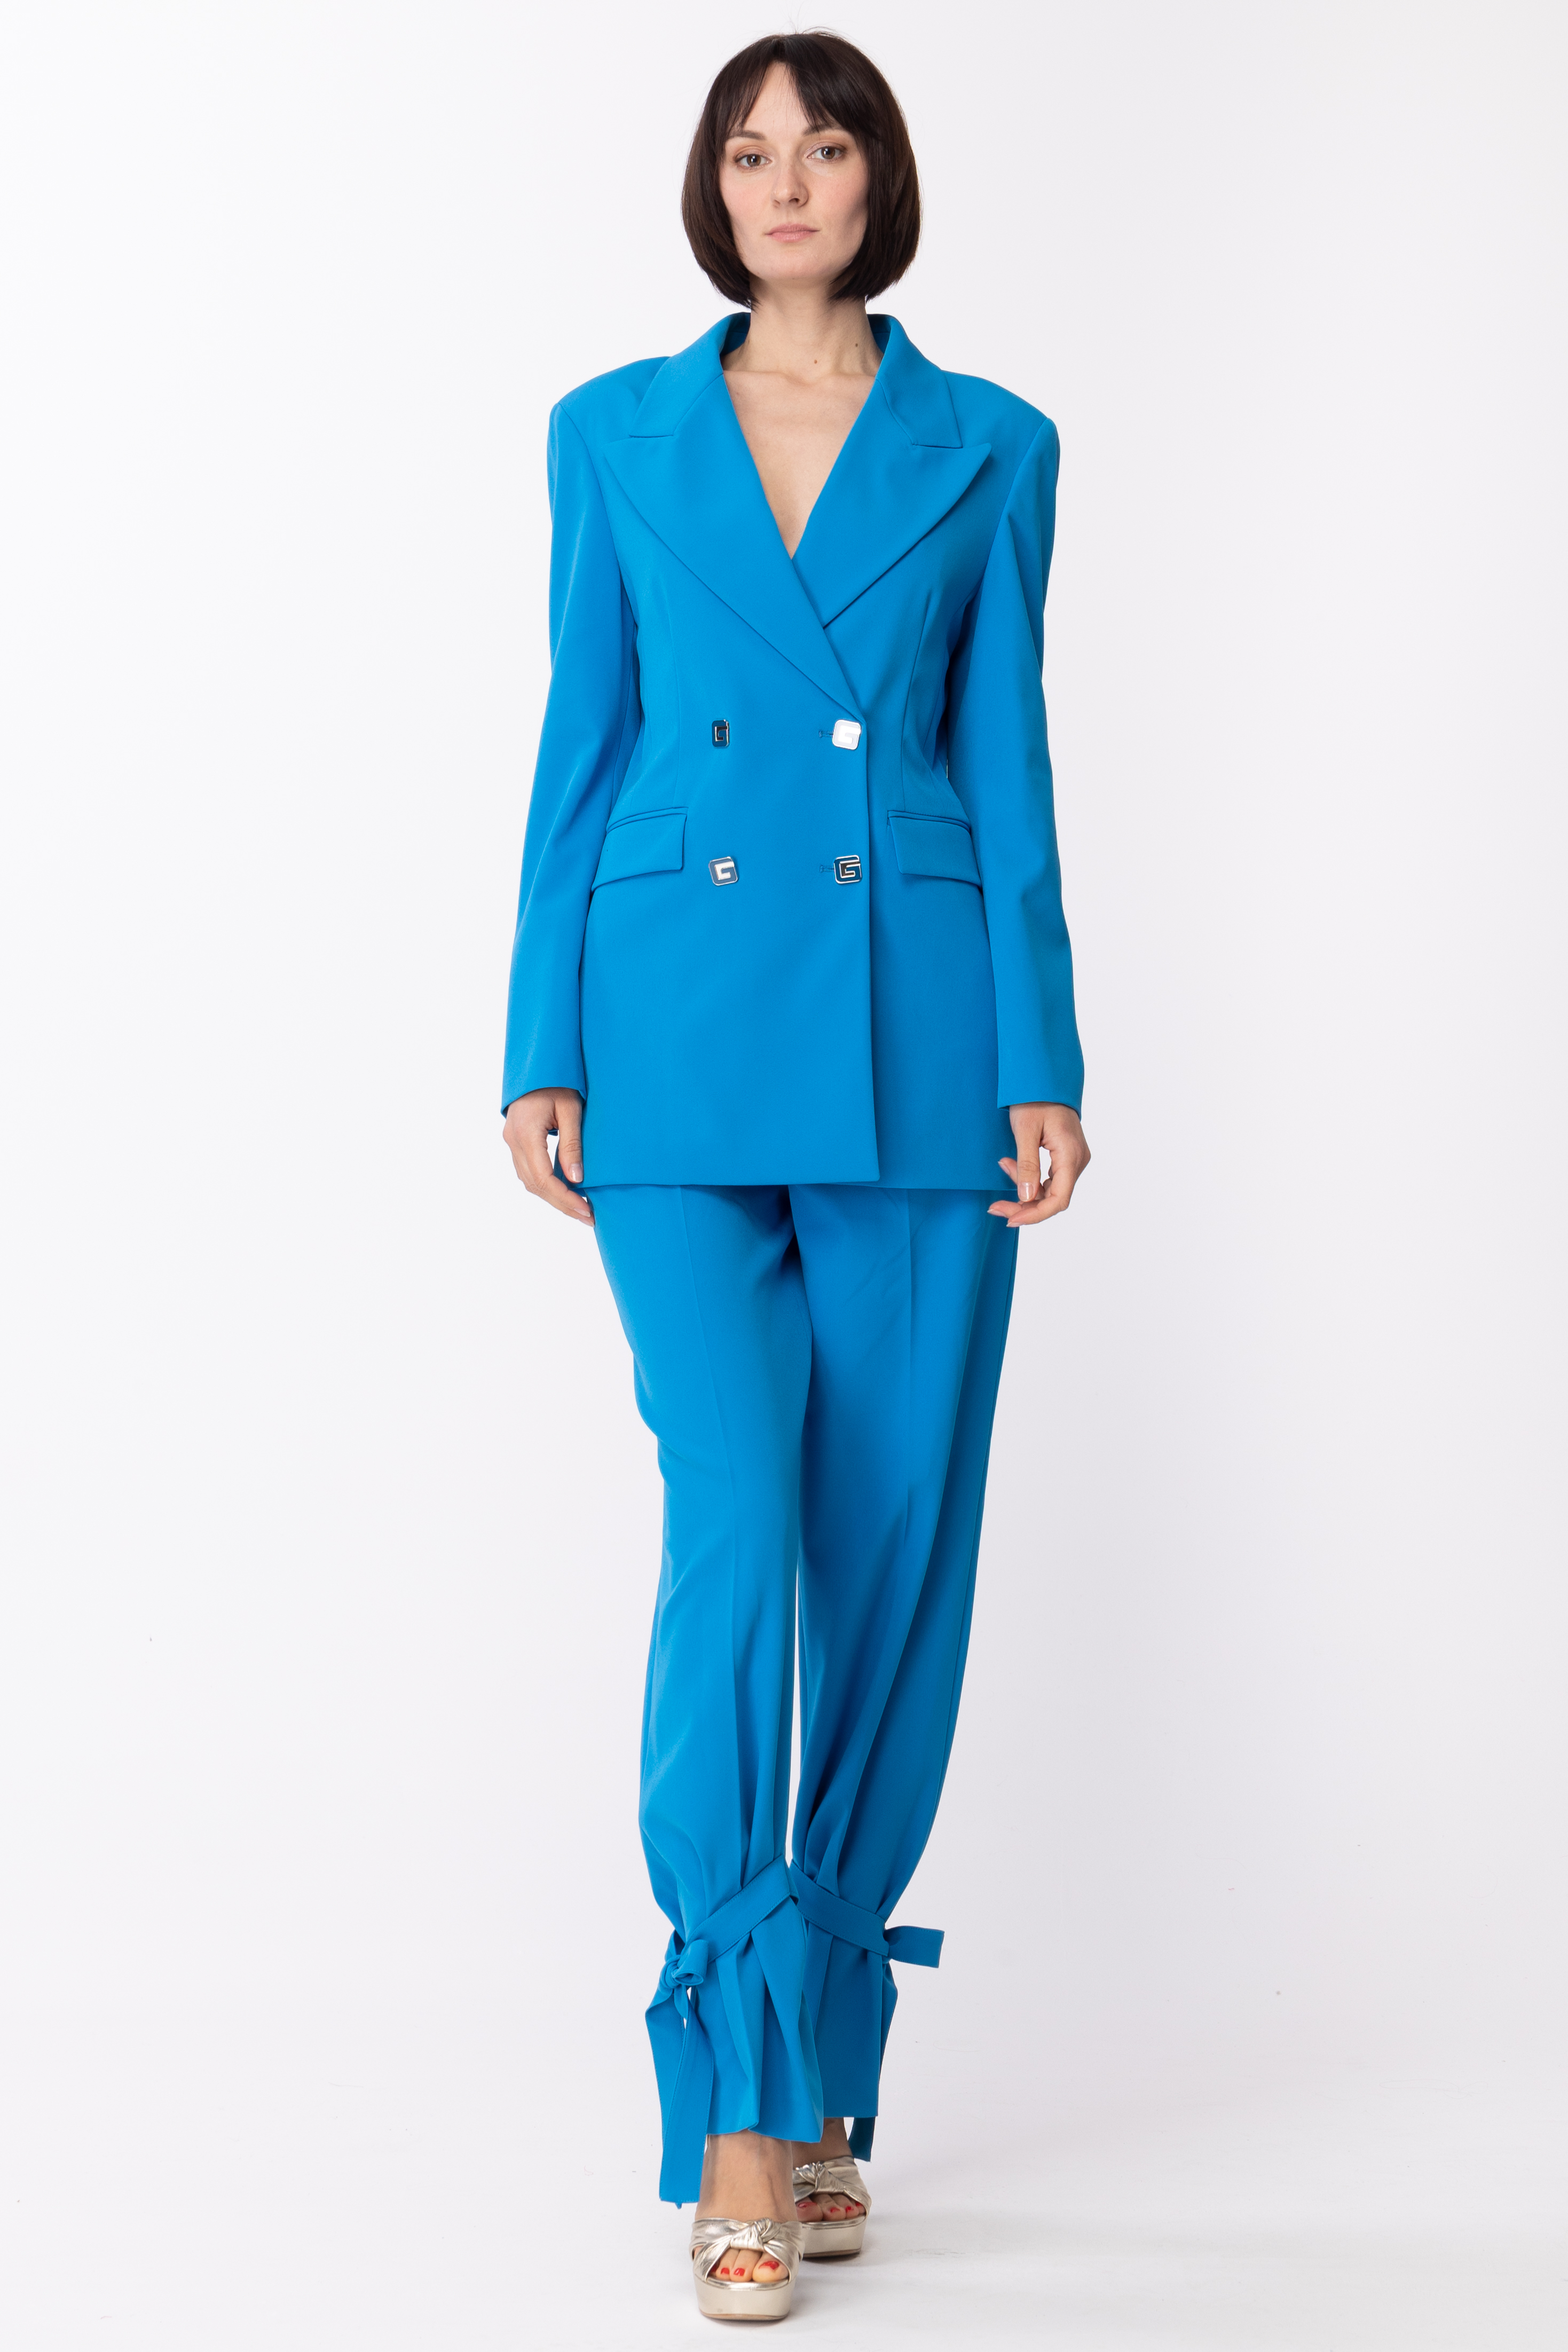 Aperçu: Gaelle Paris Veste à double boutonnage avec boutons logotypés Blu Cobalto